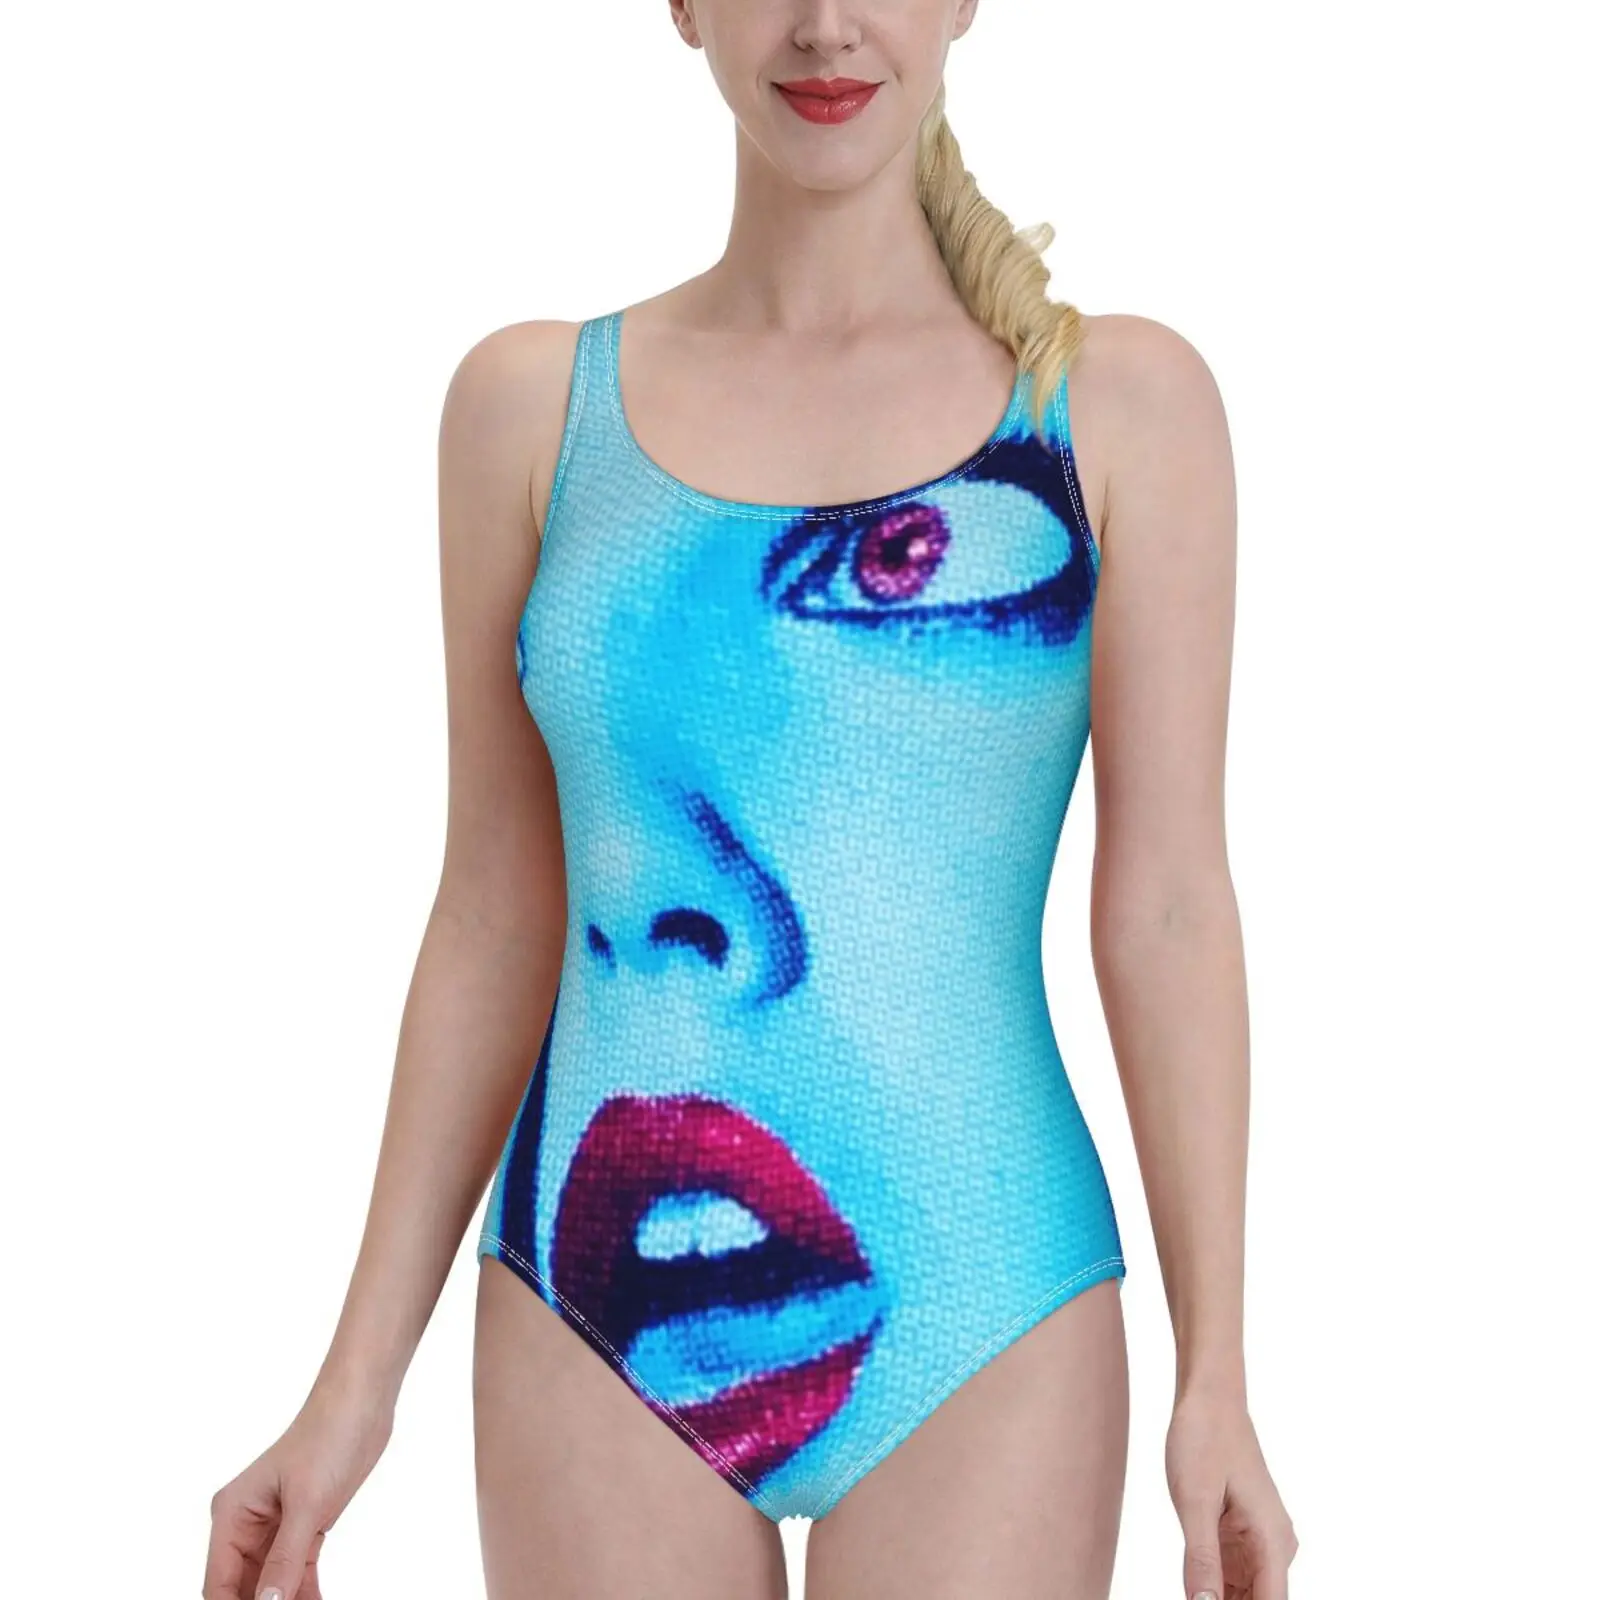 

Vhcry (Кейси) сексуальная одежда для плавания с принтом, женский слитный купальник, Женский Монокини, купальный костюм, одежда для плавания, костюм для плавания с принтом крика, брекет Барримор